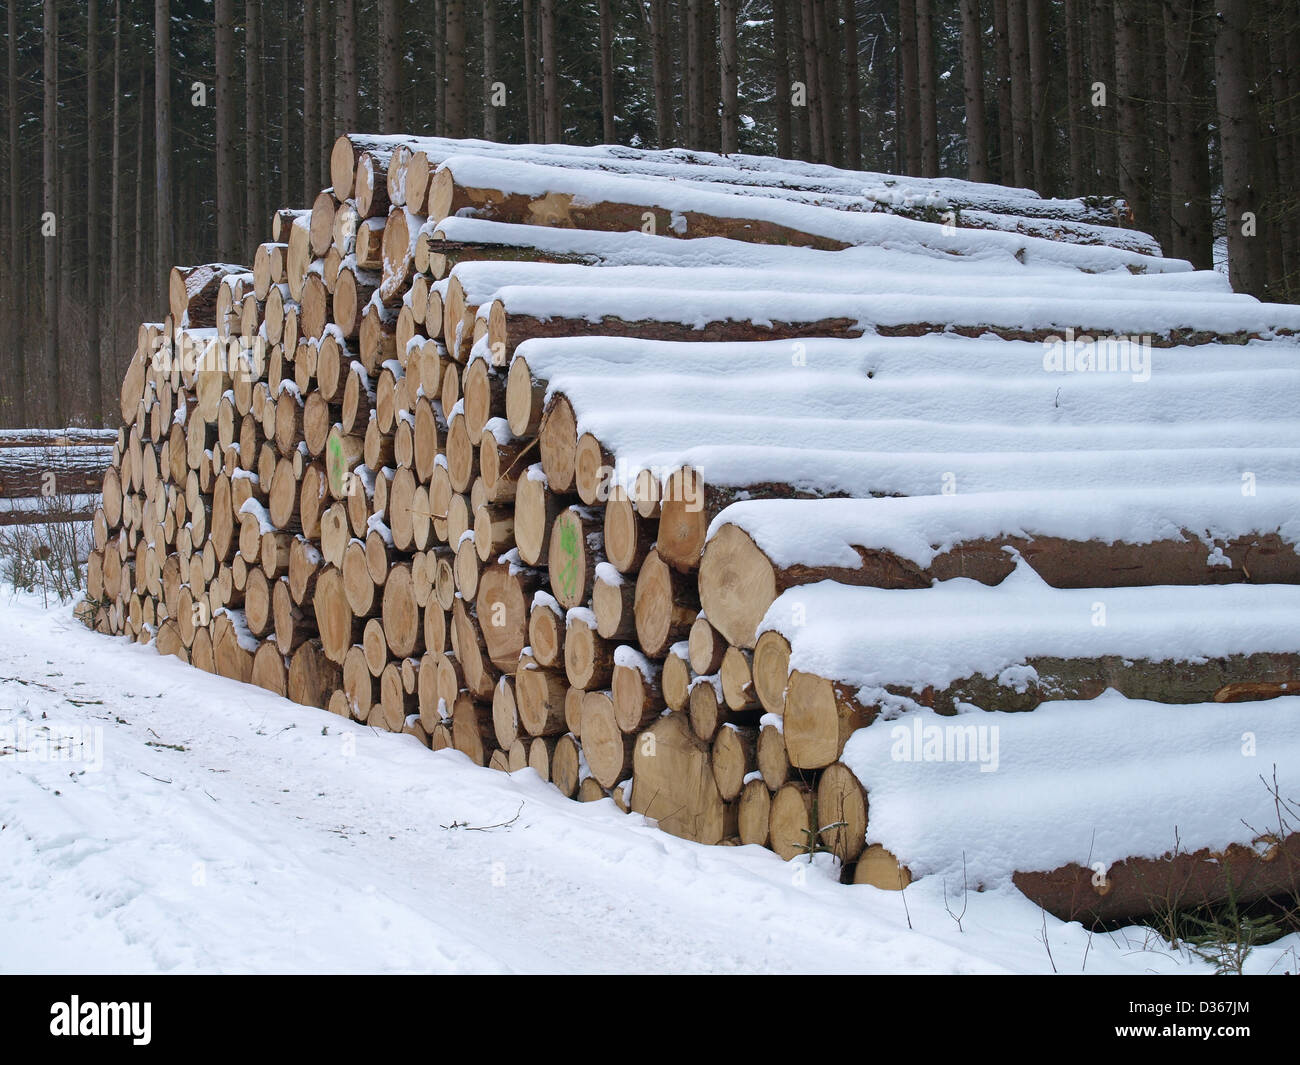 Lumberyard - snowbound log tagliati nel legno / Holzlager - verschneite, gefällte Baumstämme im Wald Foto Stock